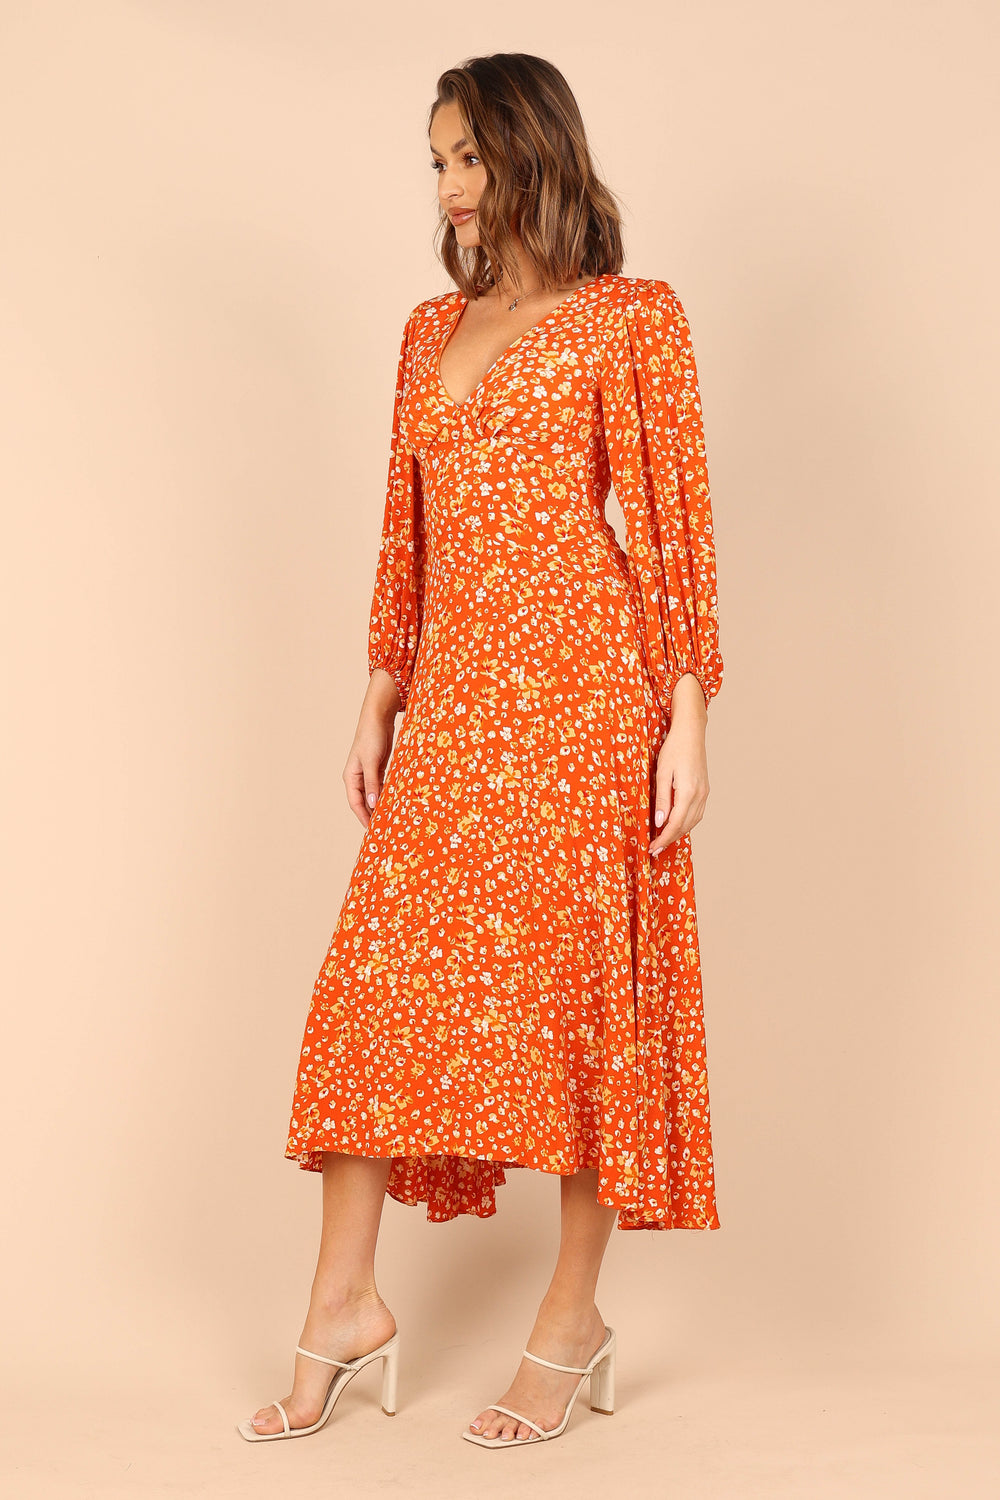 Petal and Pup USA DRESSES Aron Long Sleeve Maxi Dress - Orange Floral